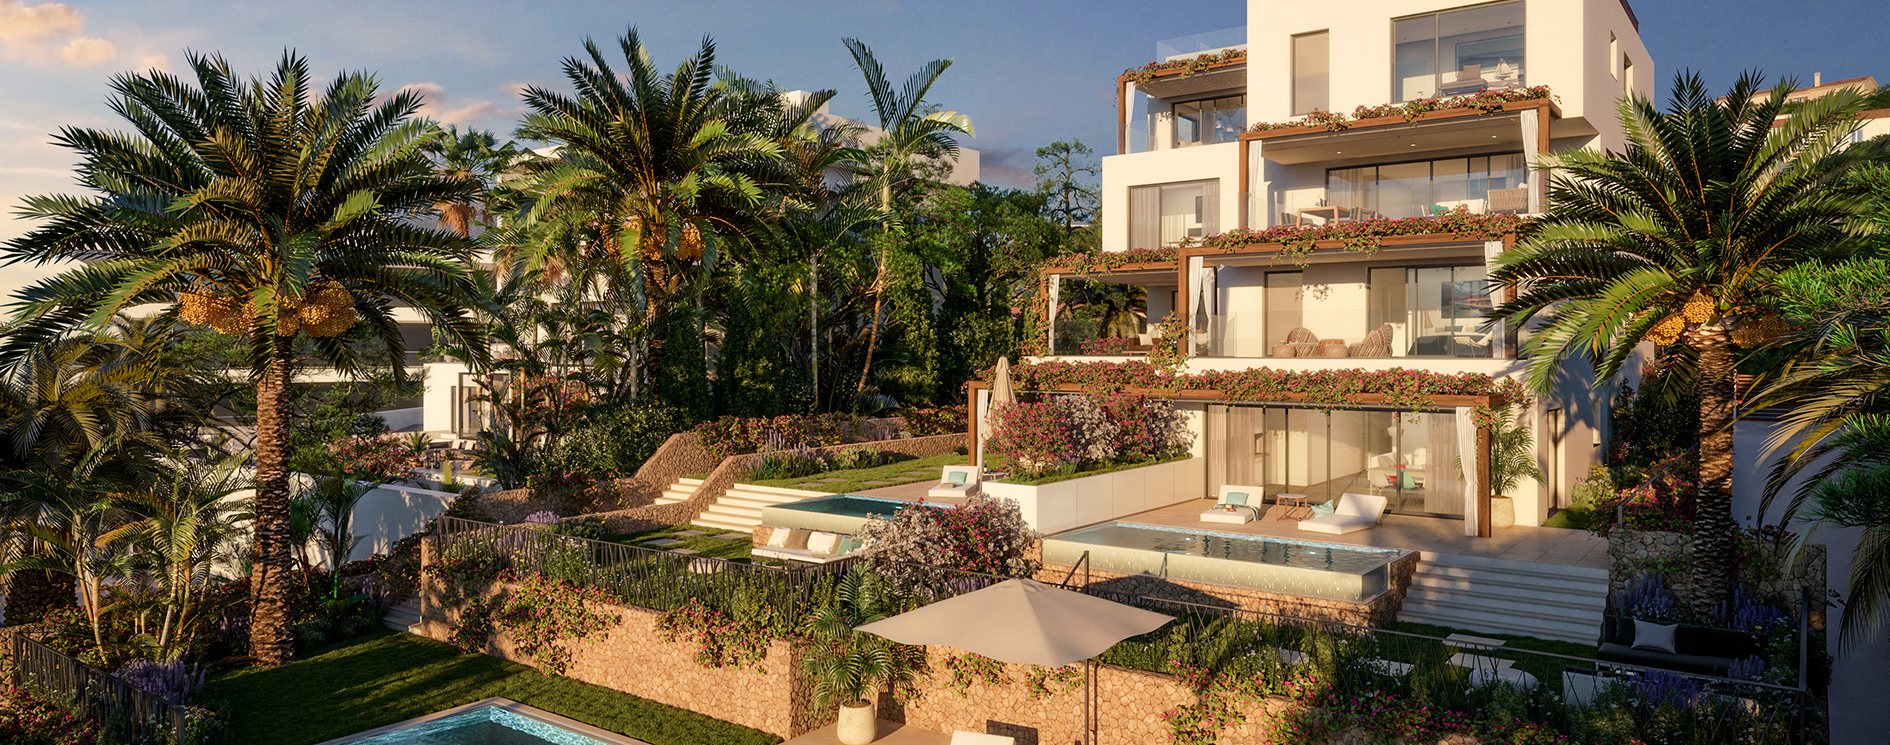 Domus Vivendi crea ROOF by ELEMENTS, otro complejo de apartamentos exclusivo en Mallorca